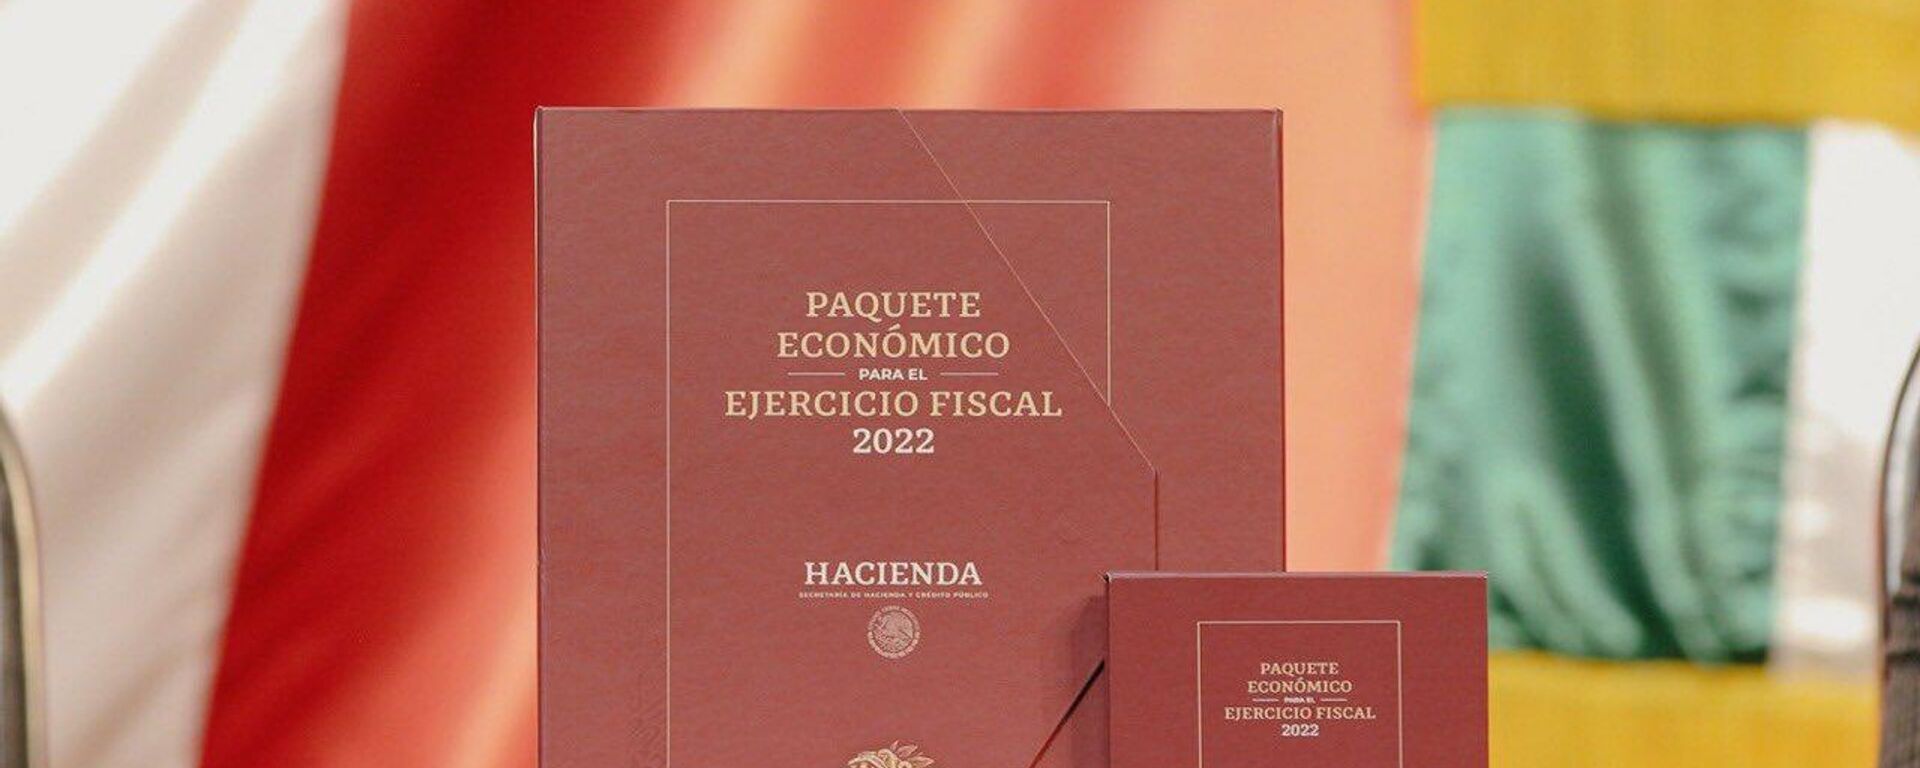 Paquete Económico Fiscal en México para 2022 - Sputnik Mundo, 1920, 08.09.2021